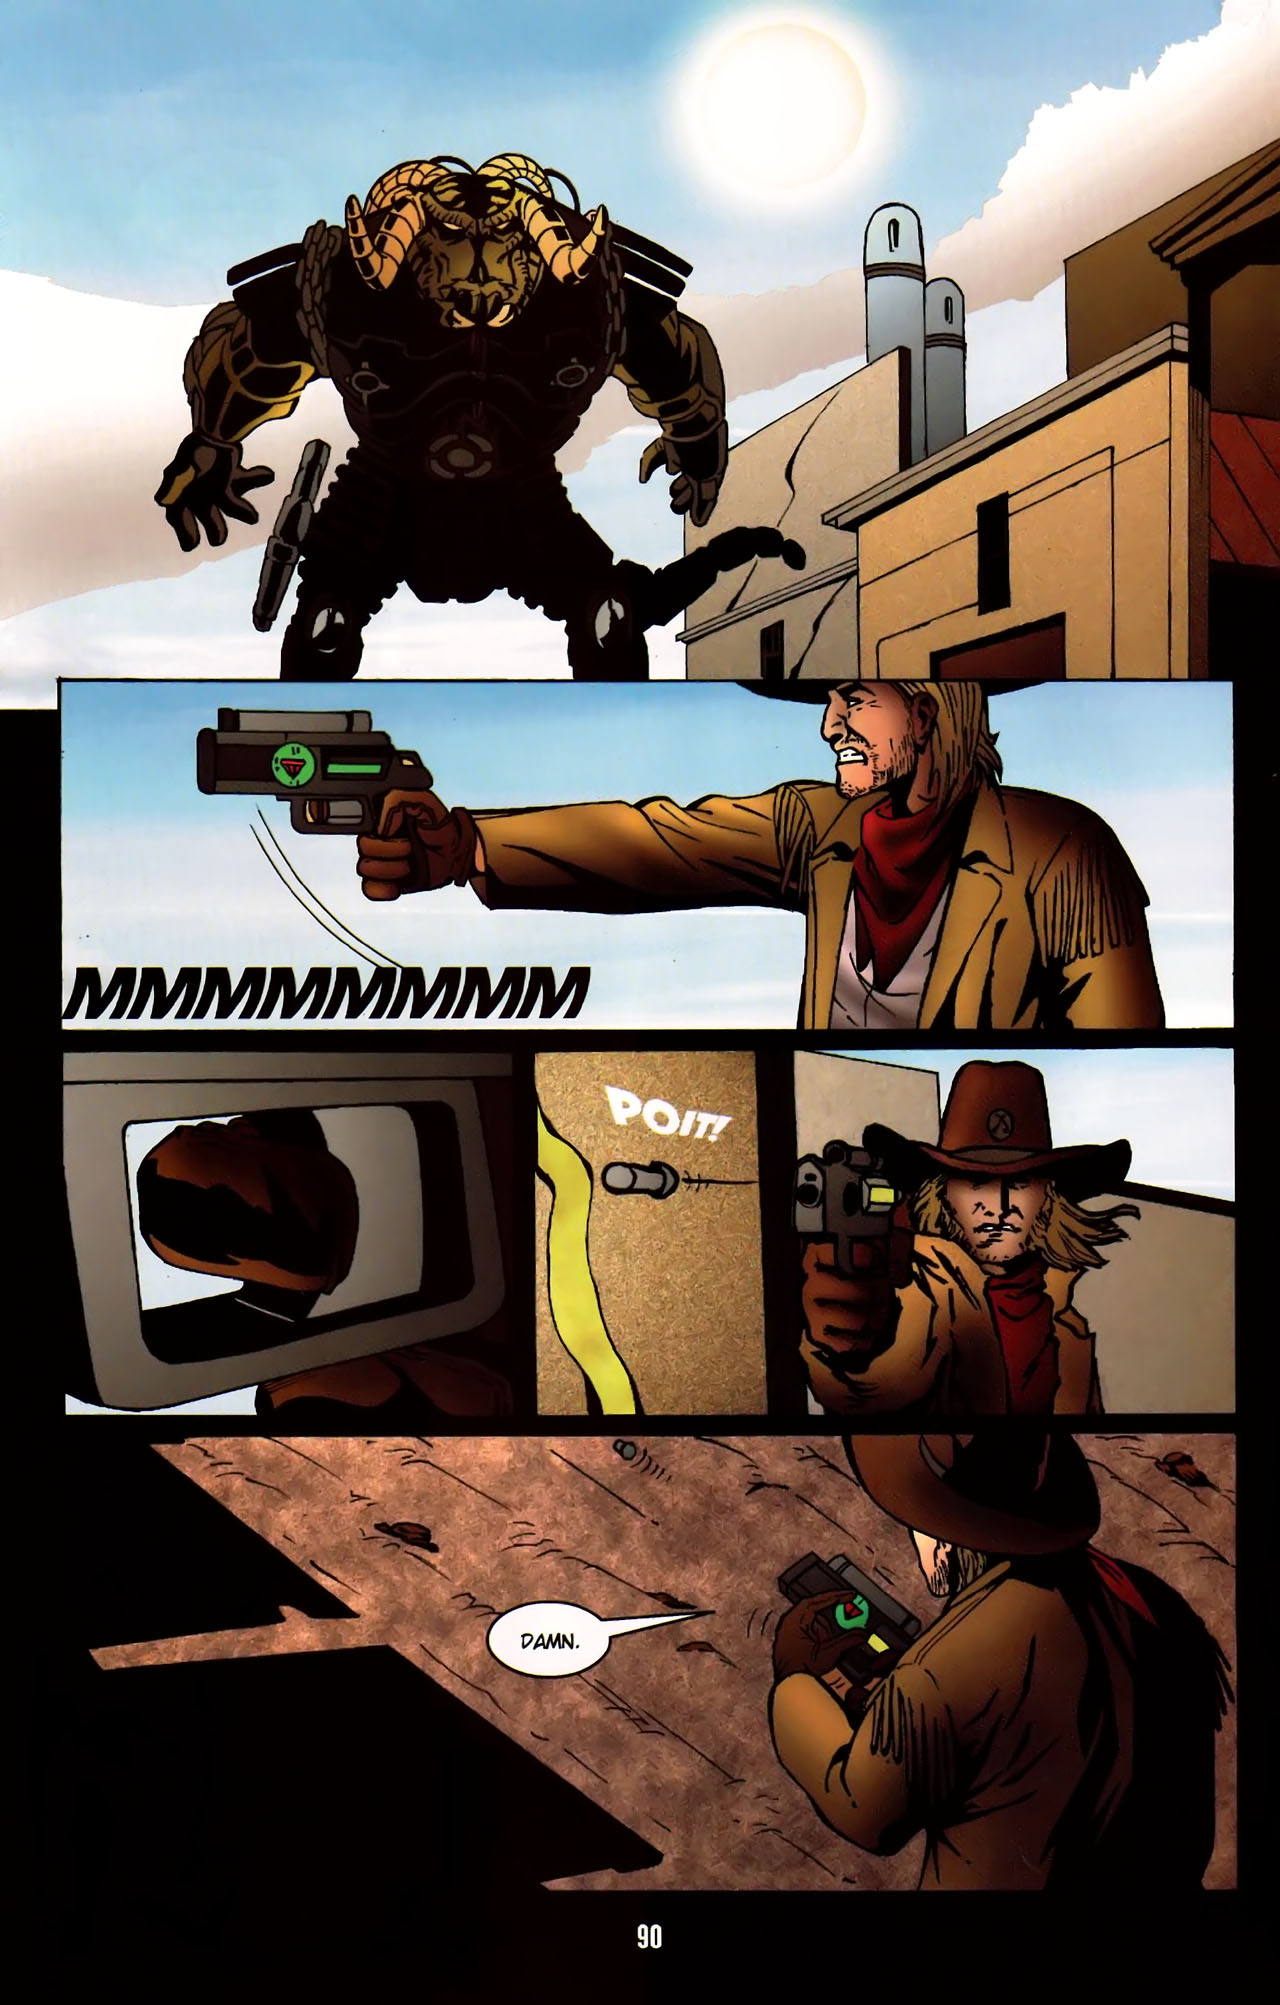 Cowboys & Aliens #1, Part 4 